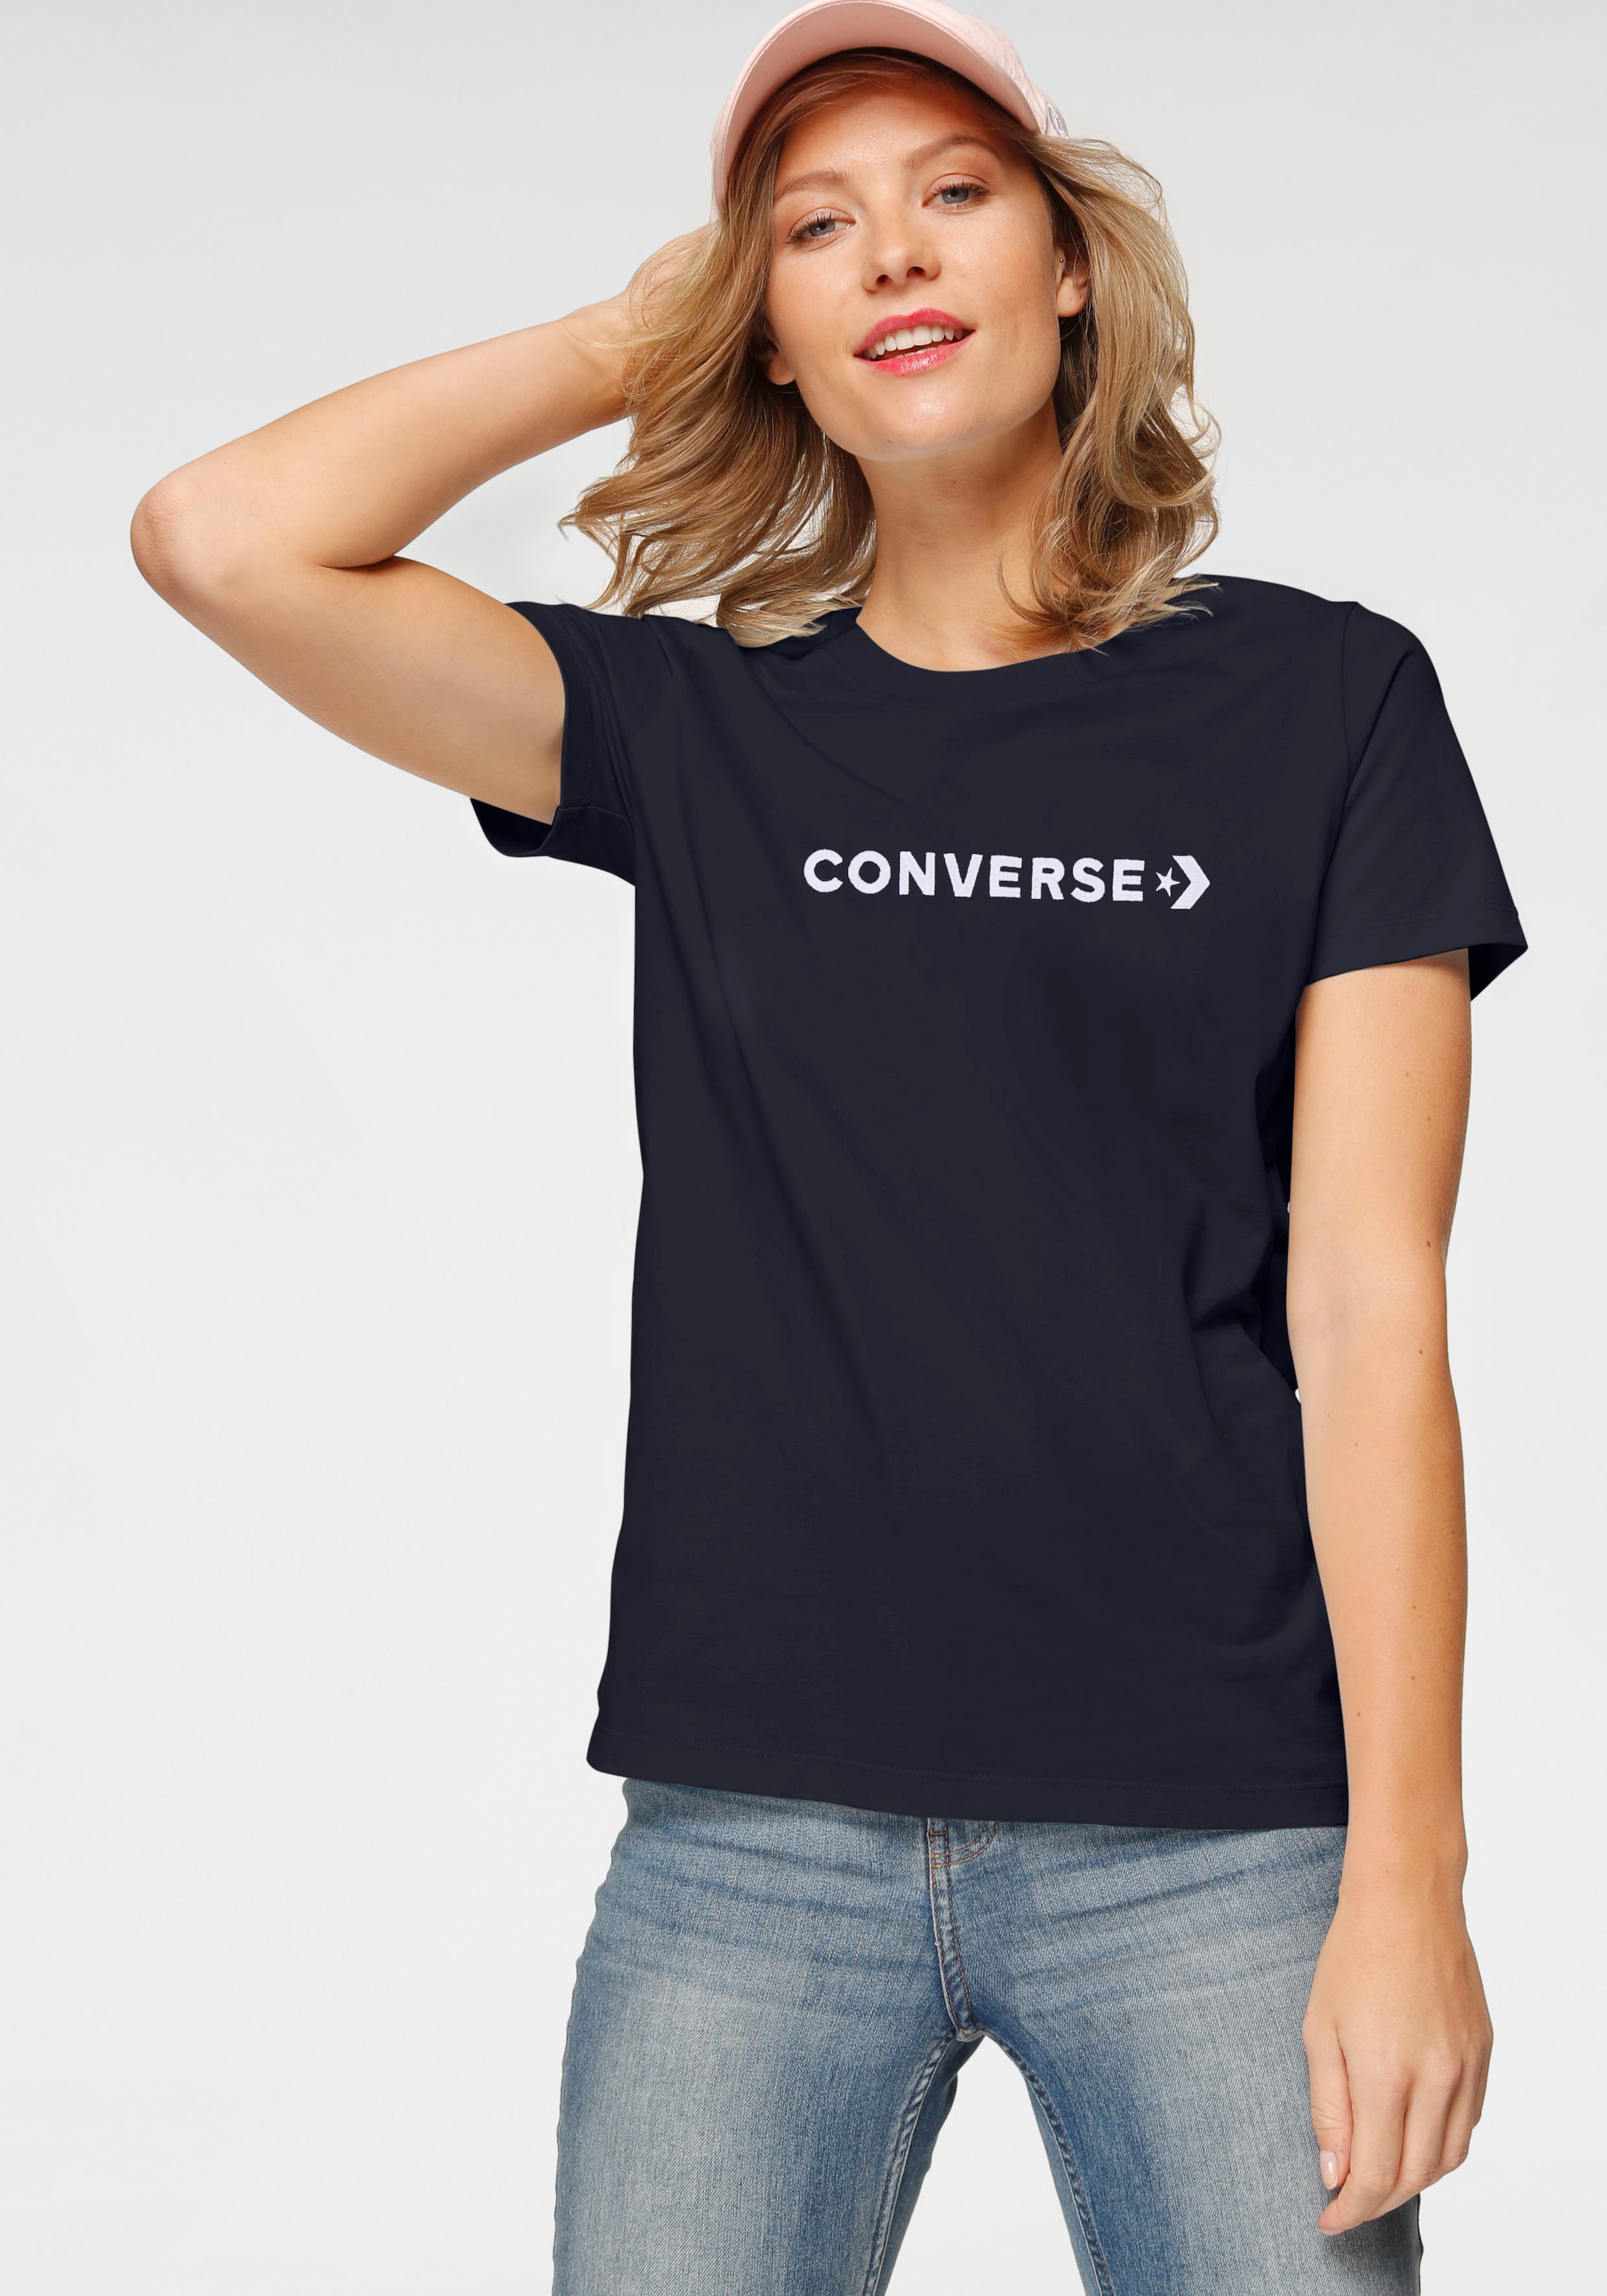 TEE« Converse OTTO kaufen T-Shirt WORDMARK »OS bei